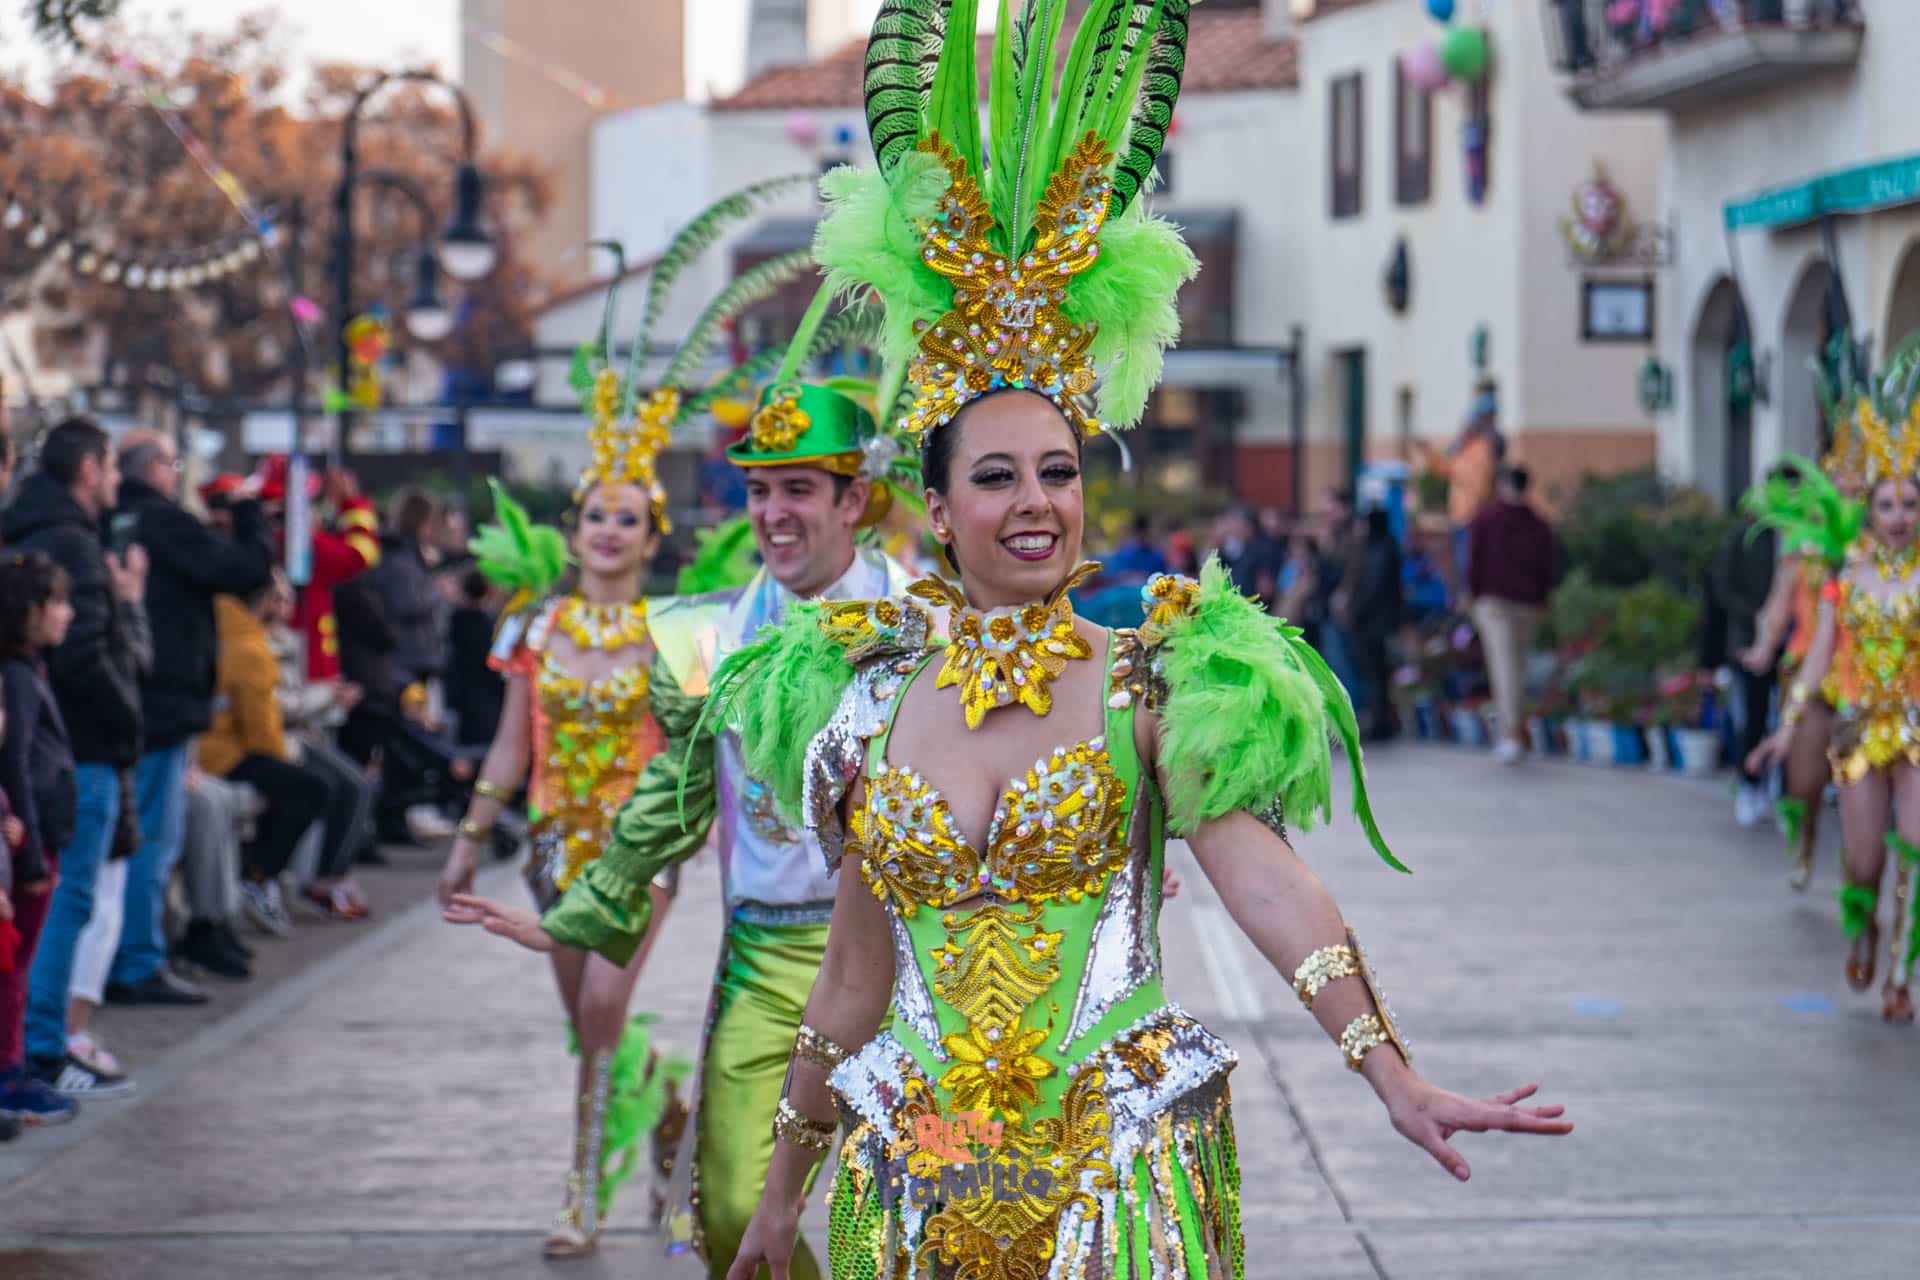 Carnaval en PortAventura